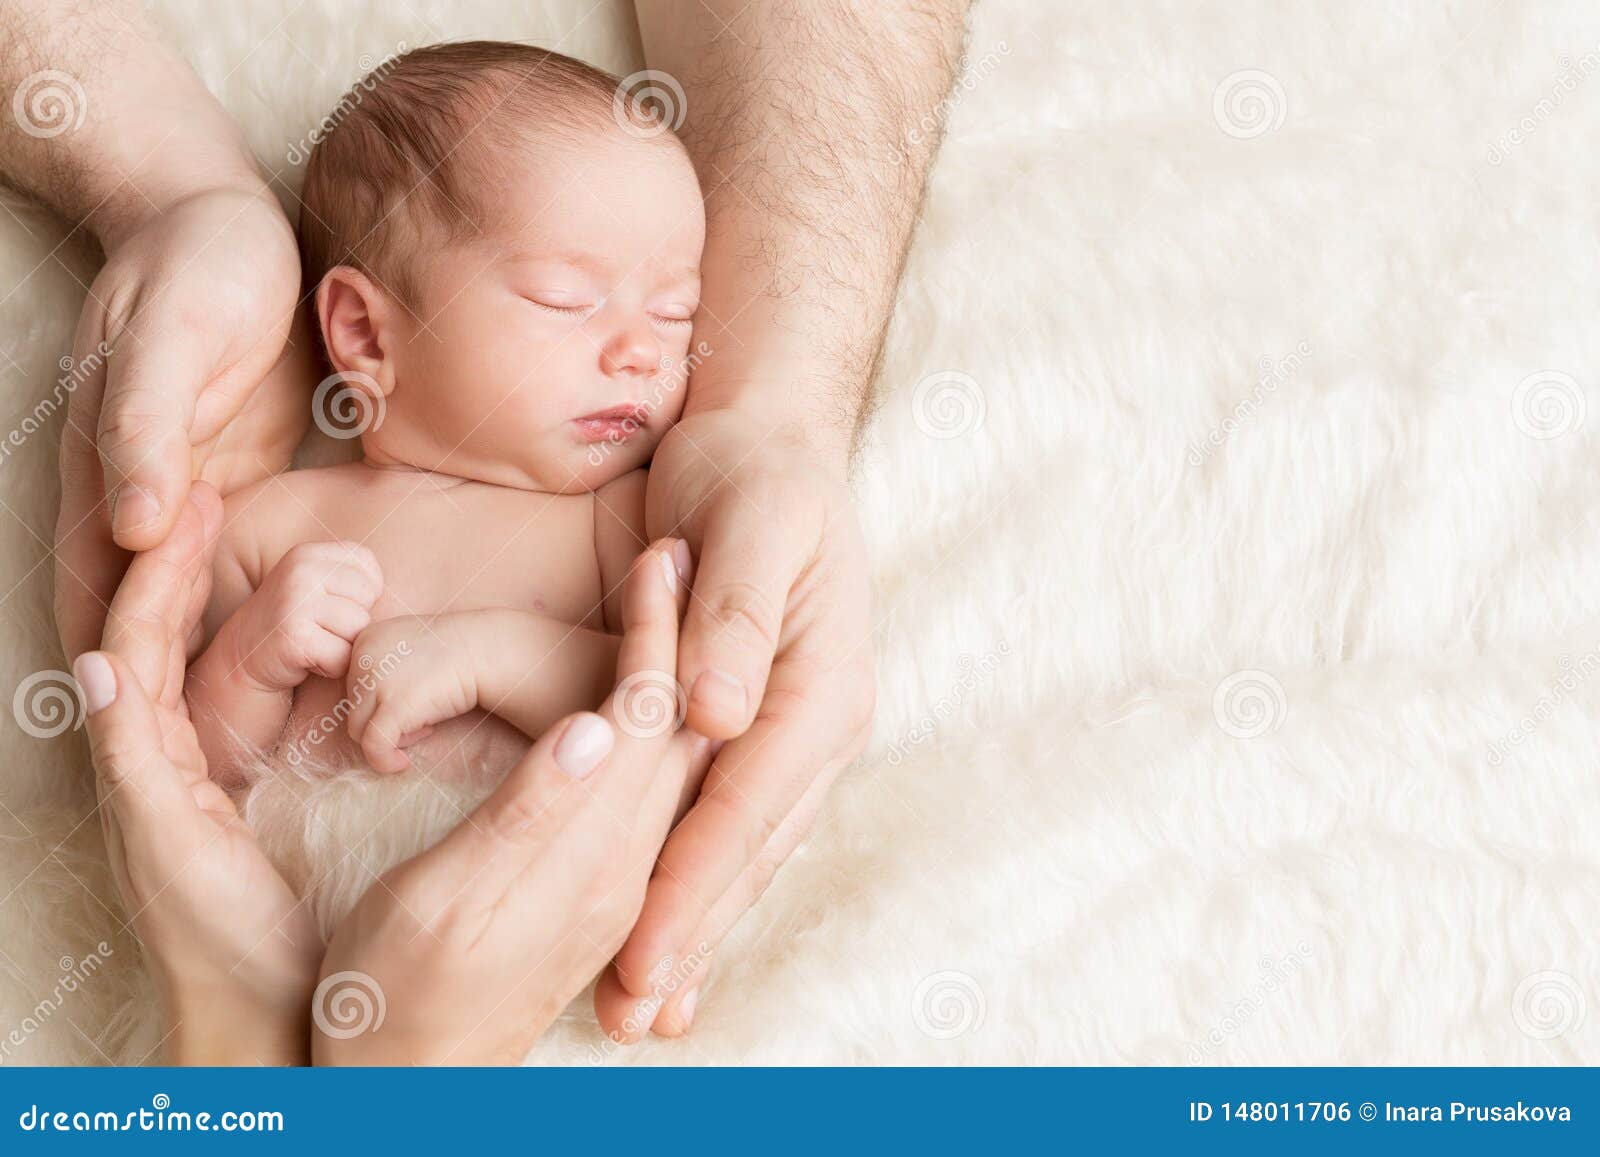 tanto Centro de producción Subir Bebé Recién Nacido En Manos De La Familia, Niño Recién Nacido Durmiente,  Cuidado De Los Padres Foto de archivo - Imagen de lindo, llevado: 148011706